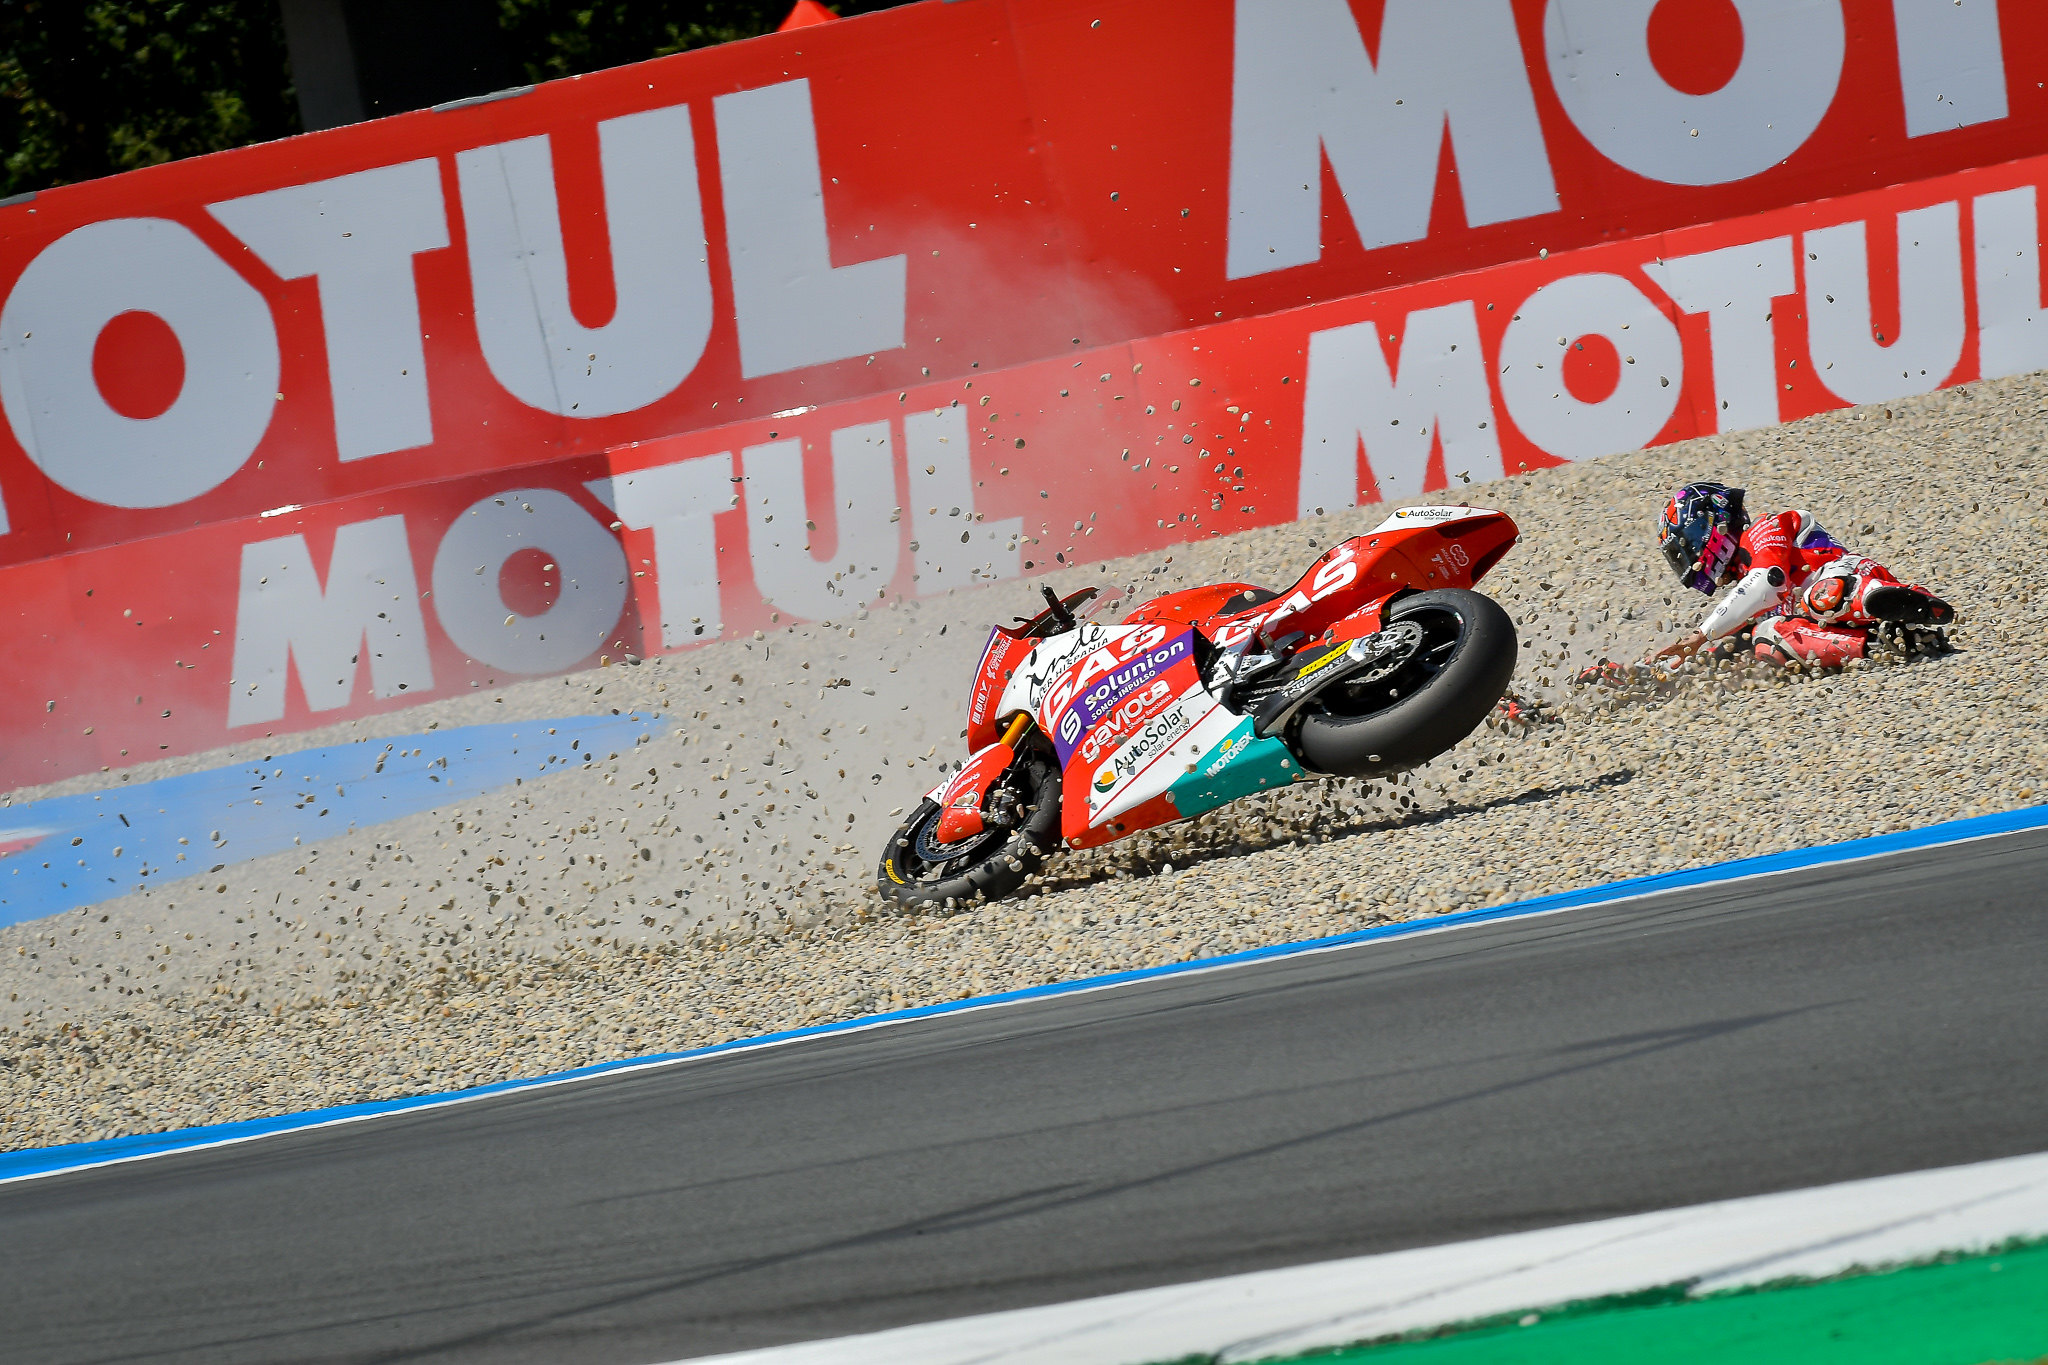 Moto2 race